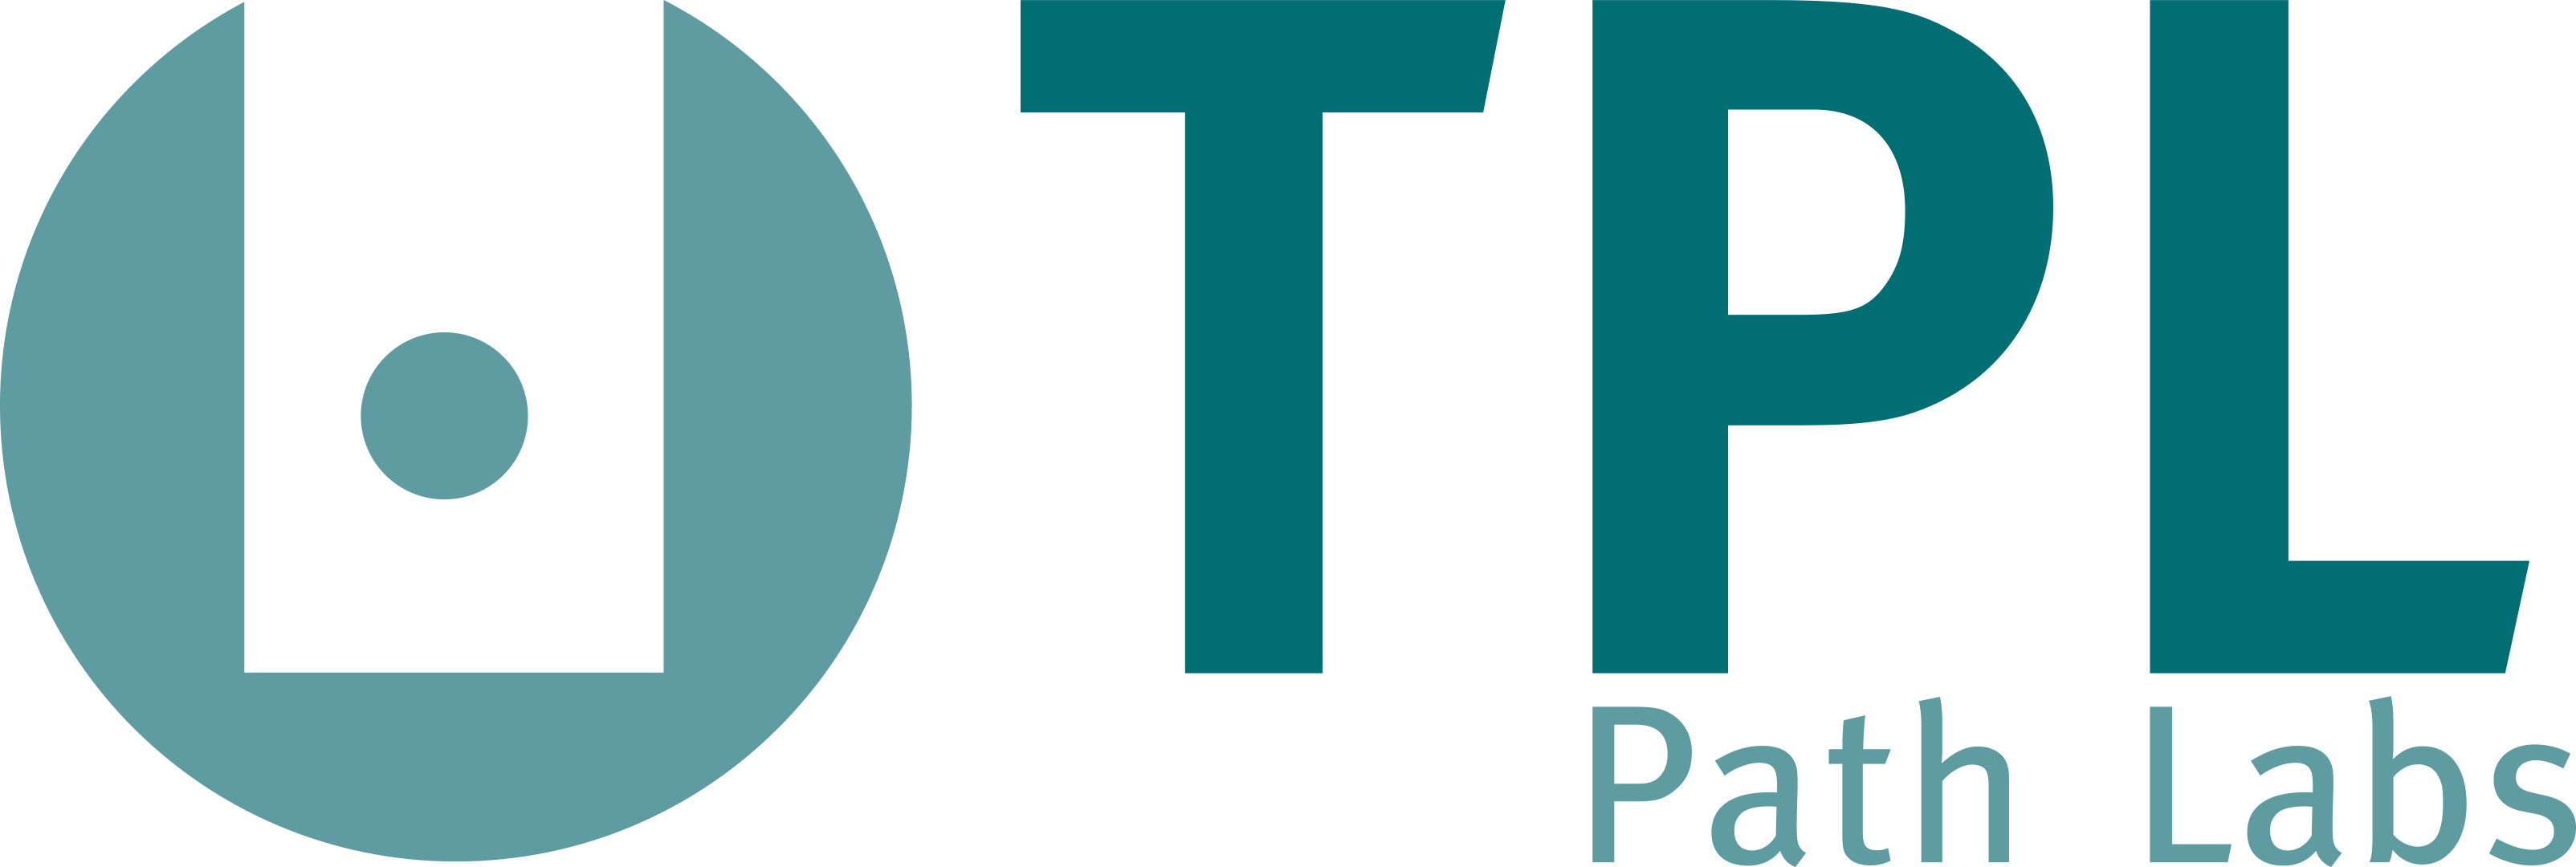 logo_TPL